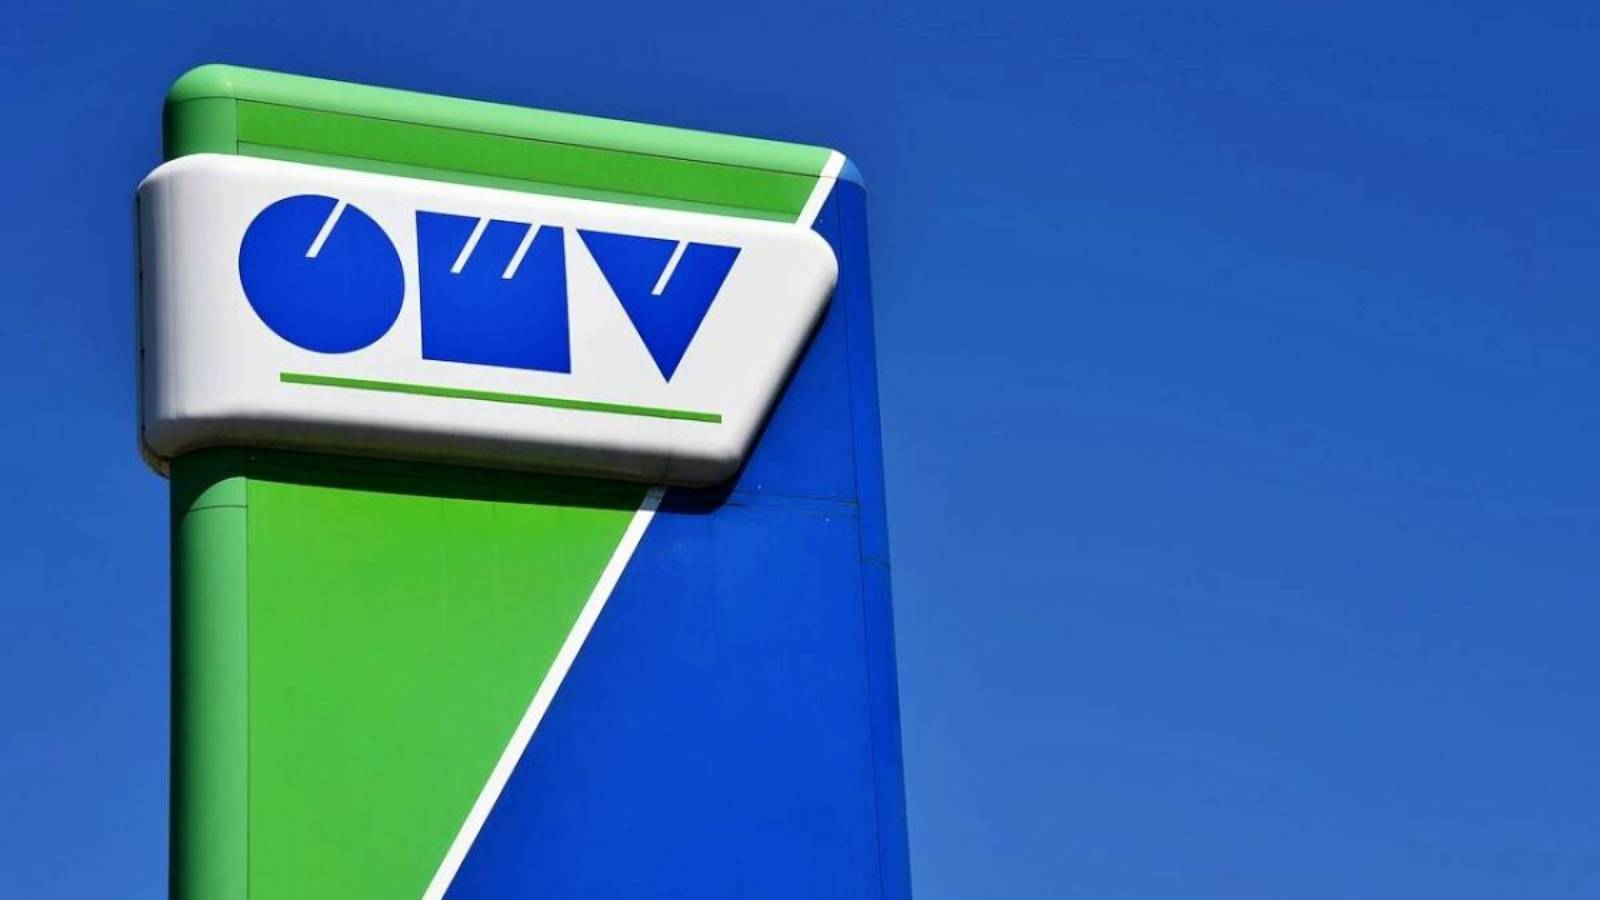 OMV 2 Offizielle offizielle Tankstellen KOSTENLOSE MILLIONEN Rumänen